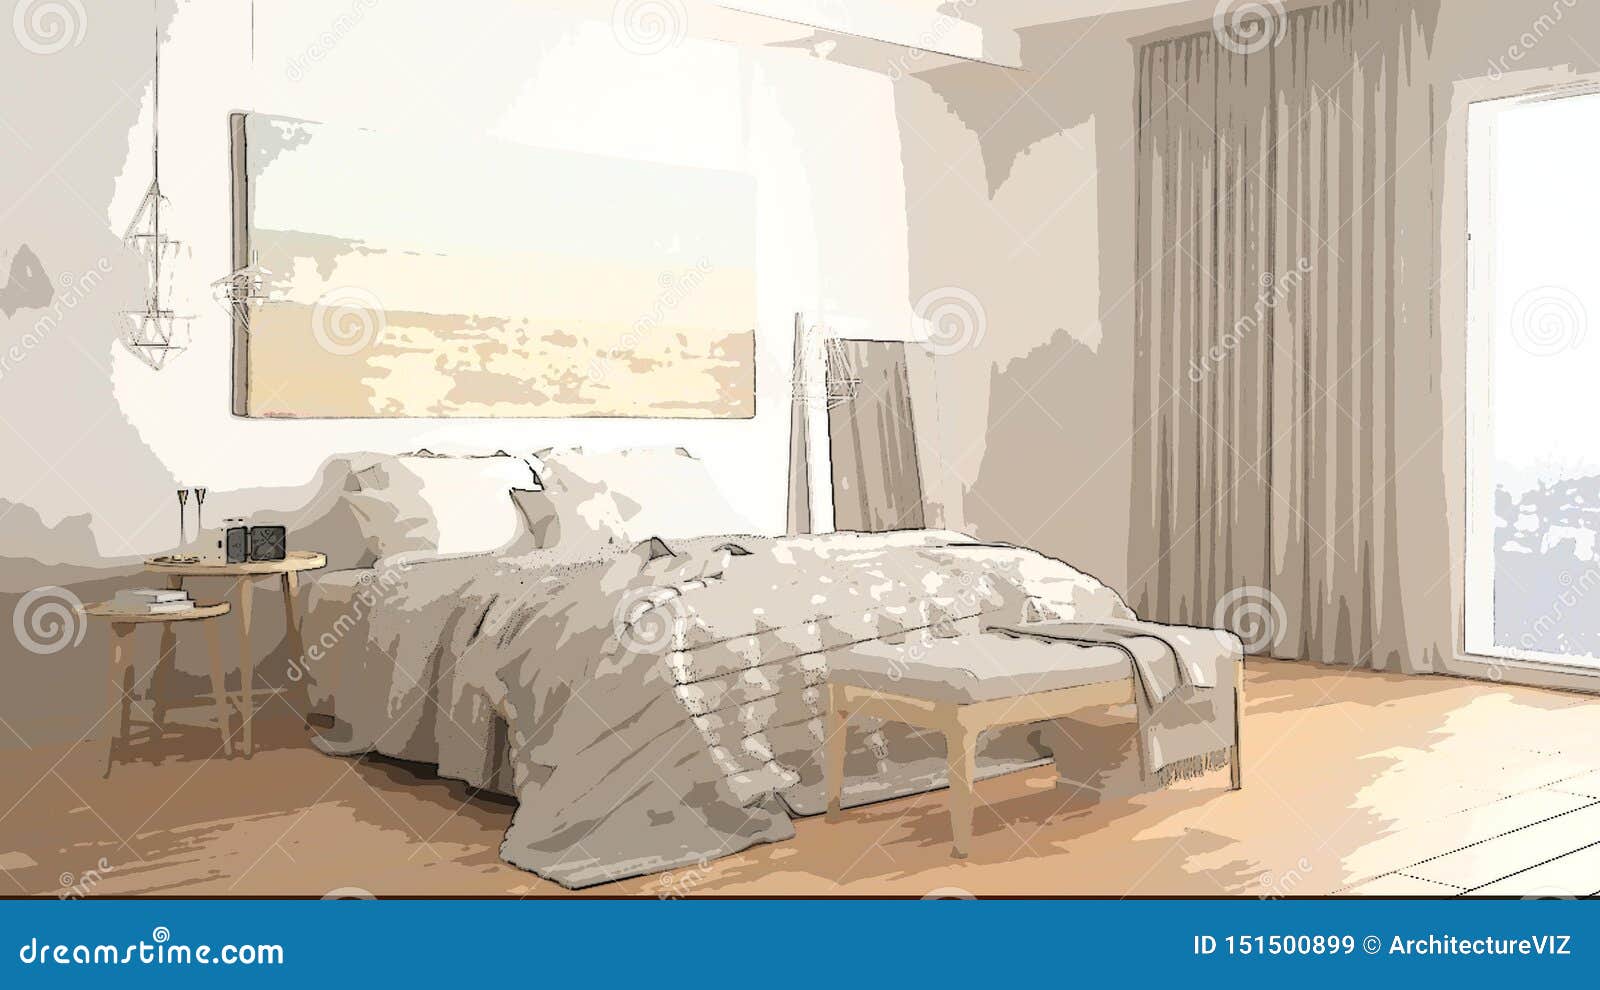 Cartoon Illustration Of Cozy Modern Bedroom Interior Design